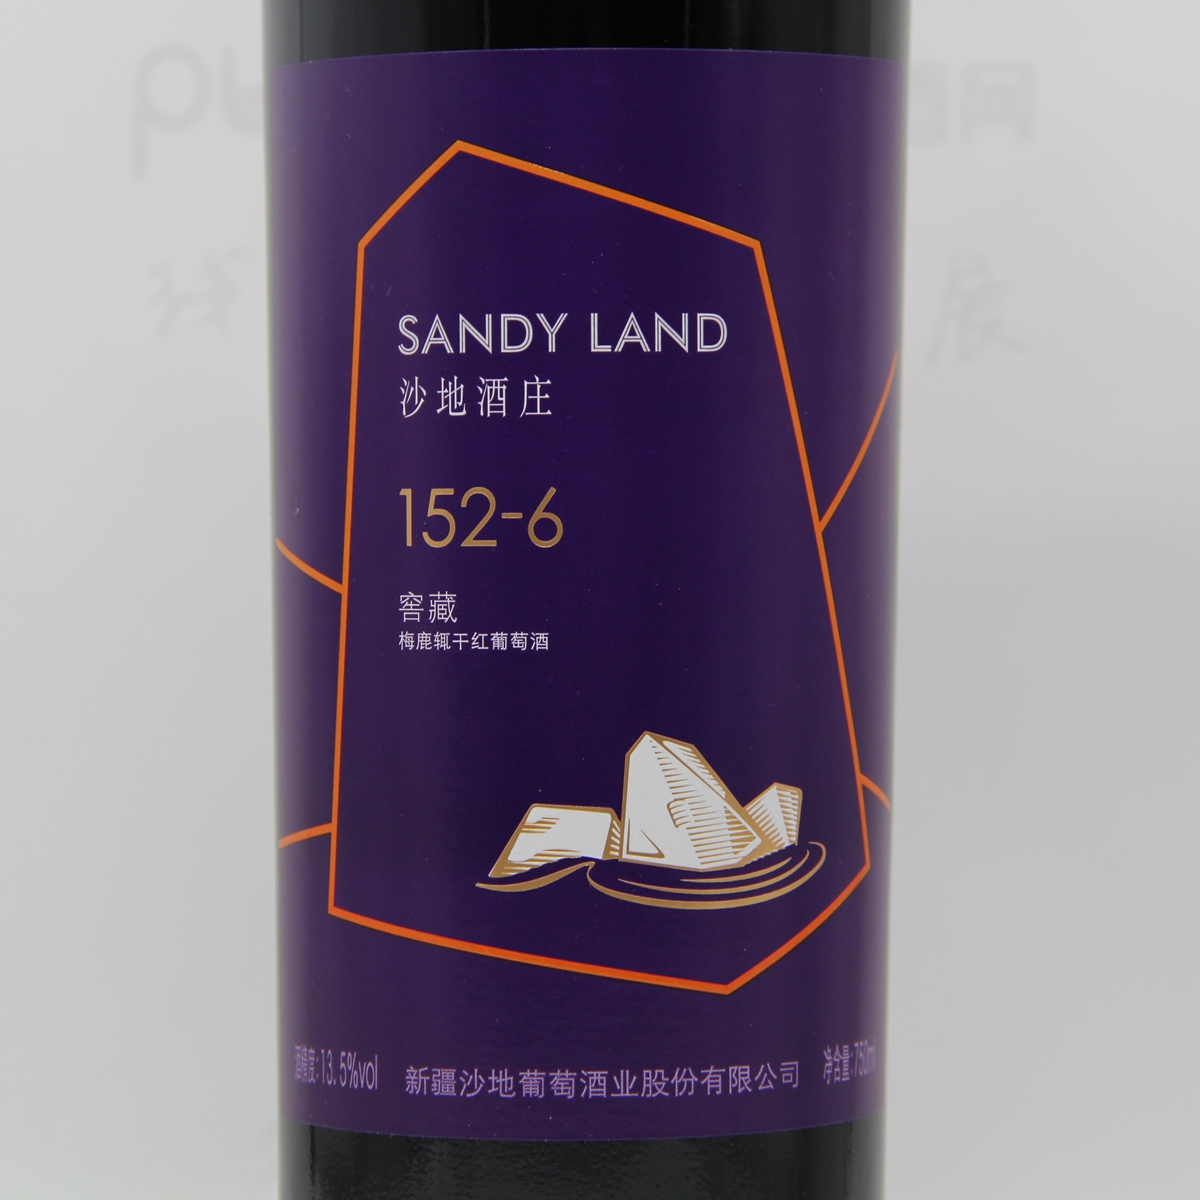 中国新疆产区沙地酒庄 梅鹿辄152-6窖藏干红葡萄酒